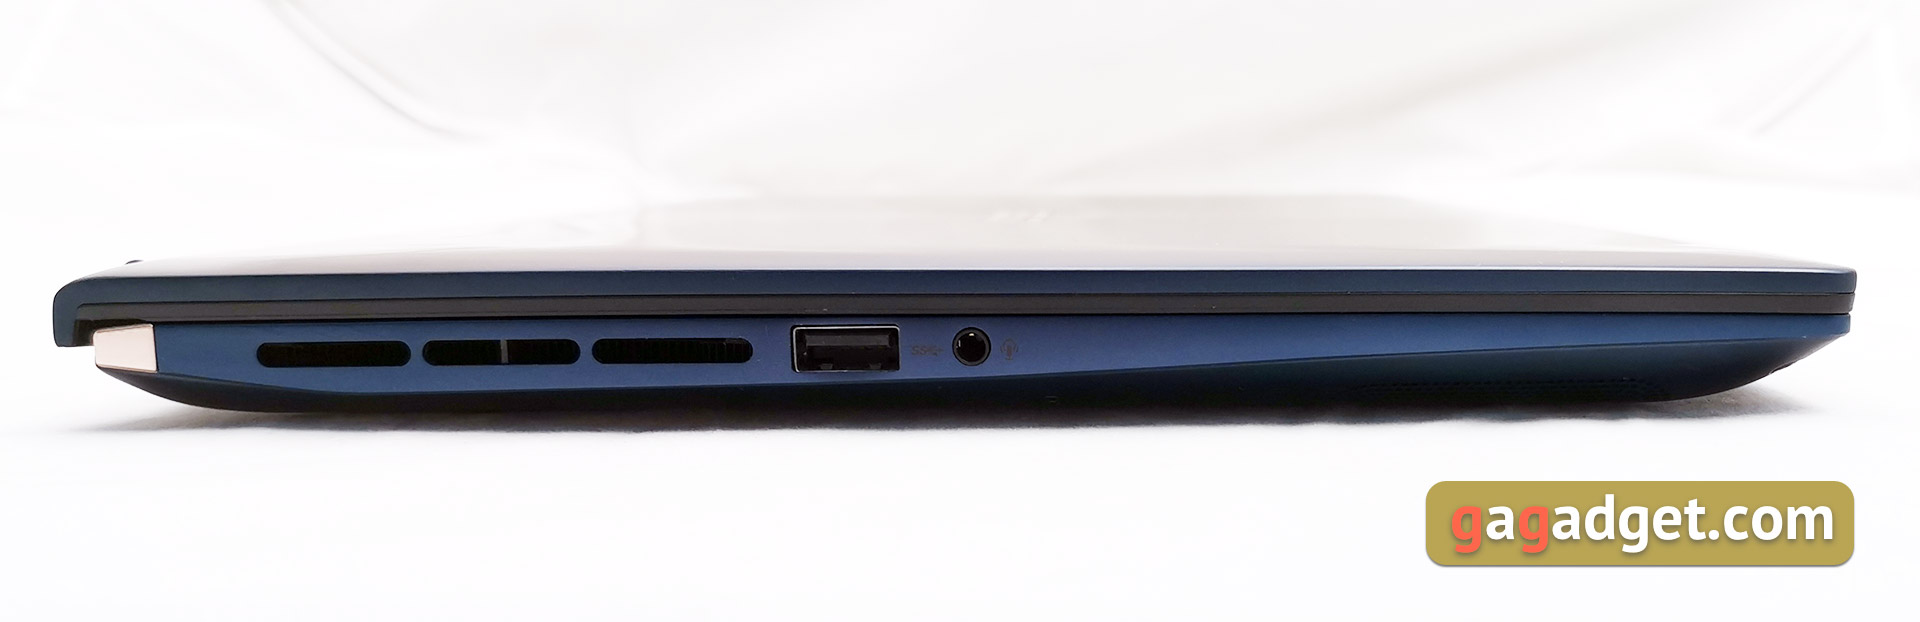 Przegląd ASUS Zenbook UX534FTS 15: kompaktowy notebook z GeForce GTX 1650 i Intel 10-tej generacji-12